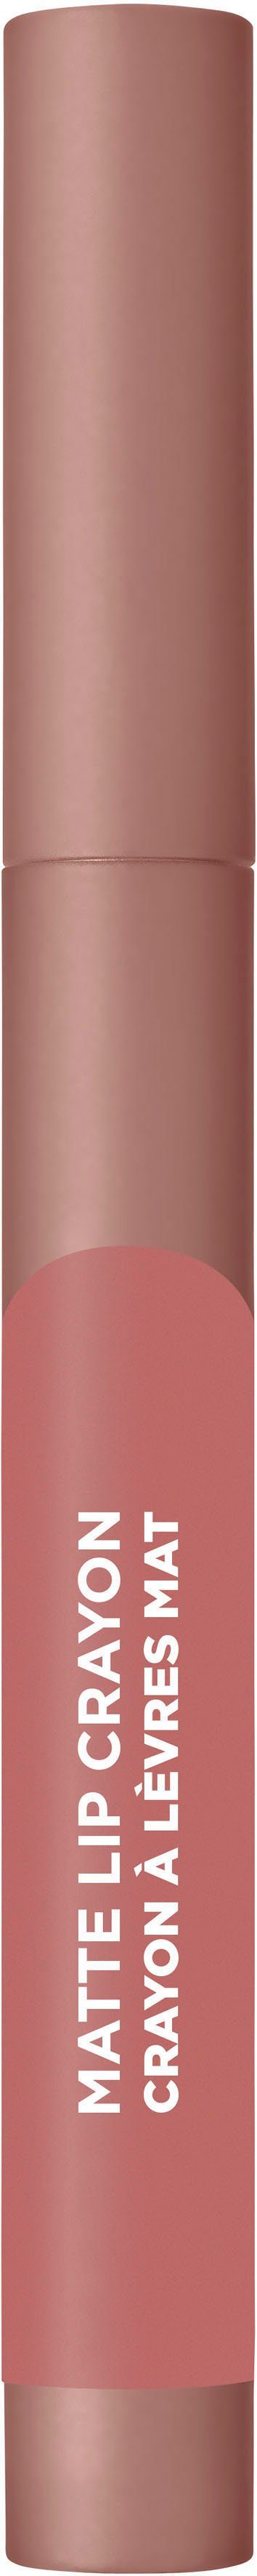 L'ORÉAL PROFESSIONNEL PARIS L'ORÉAL PARIS Lip Infaillible 102 Lippenstift Crayon Matte Blondie Caramel